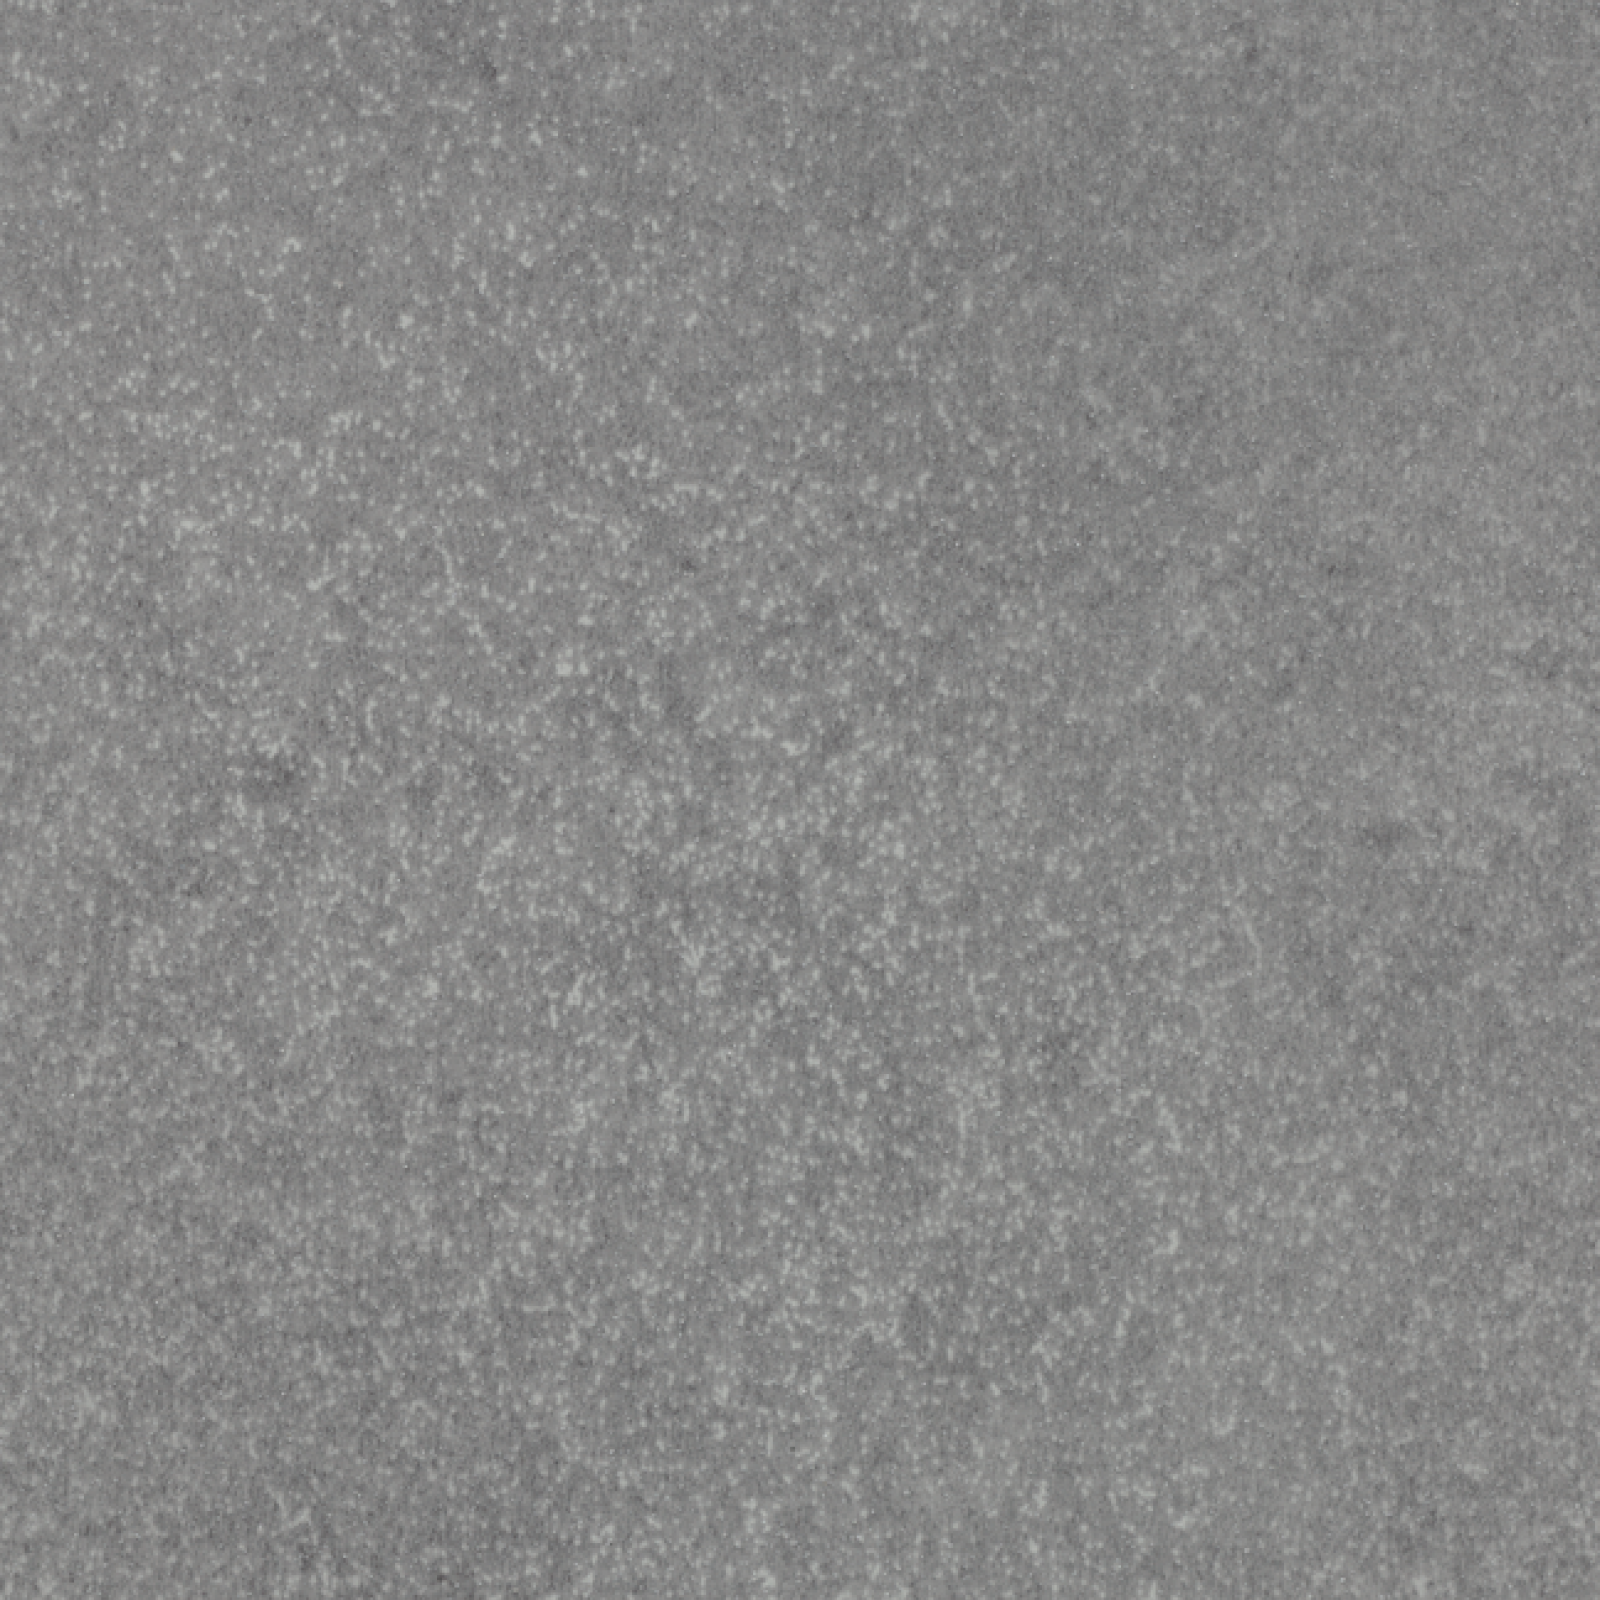 Vzor - 17362 grey speckled